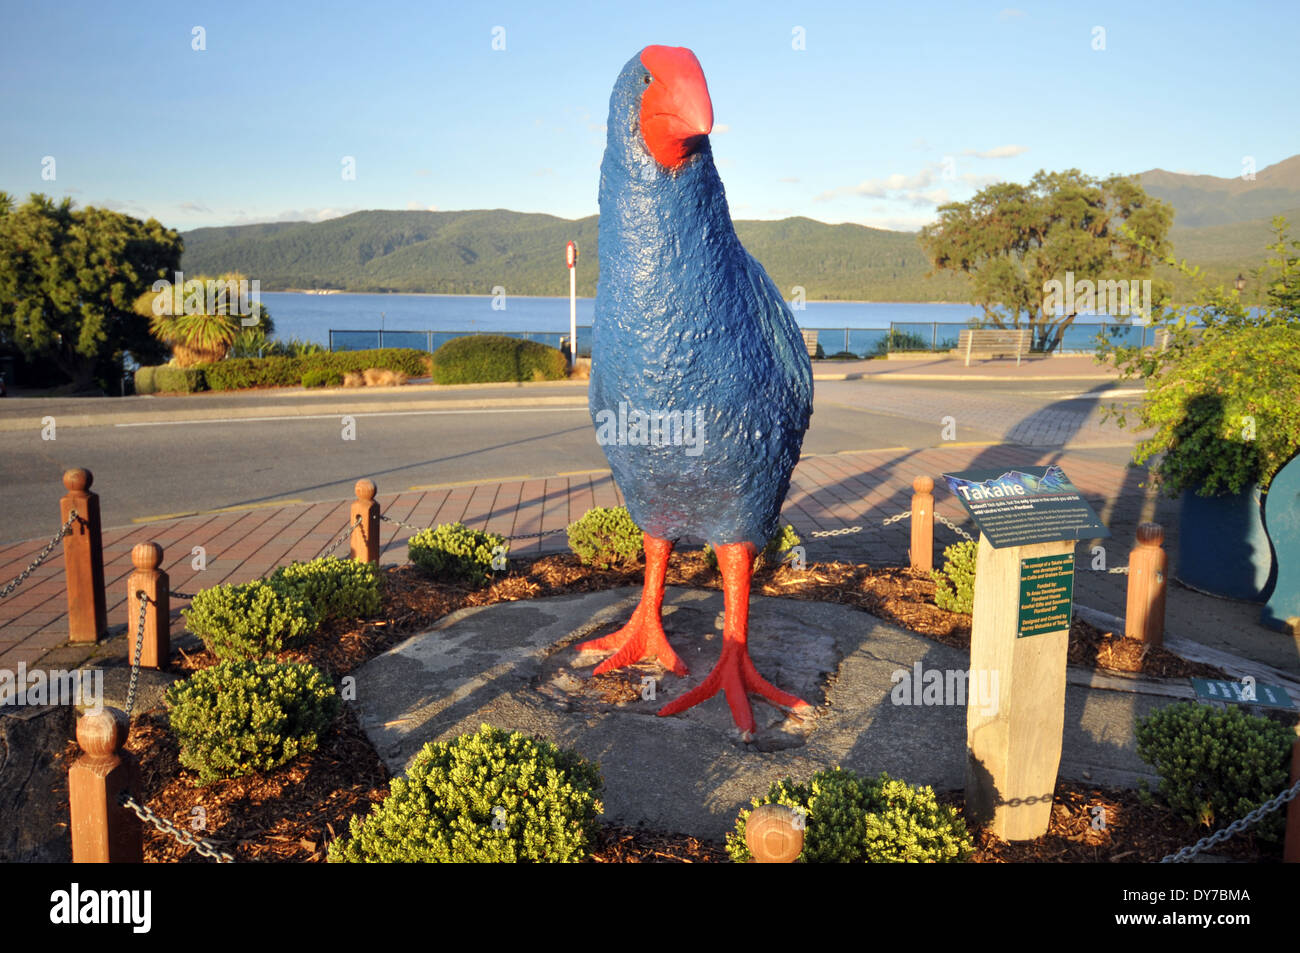 Statue d'une talève sultane ou Pukeko, les populations d'oiseaux de la Nouvelle Zélande, dans les rues de Te Anau, île du Sud, Nouvelle-Zélande Banque D'Images